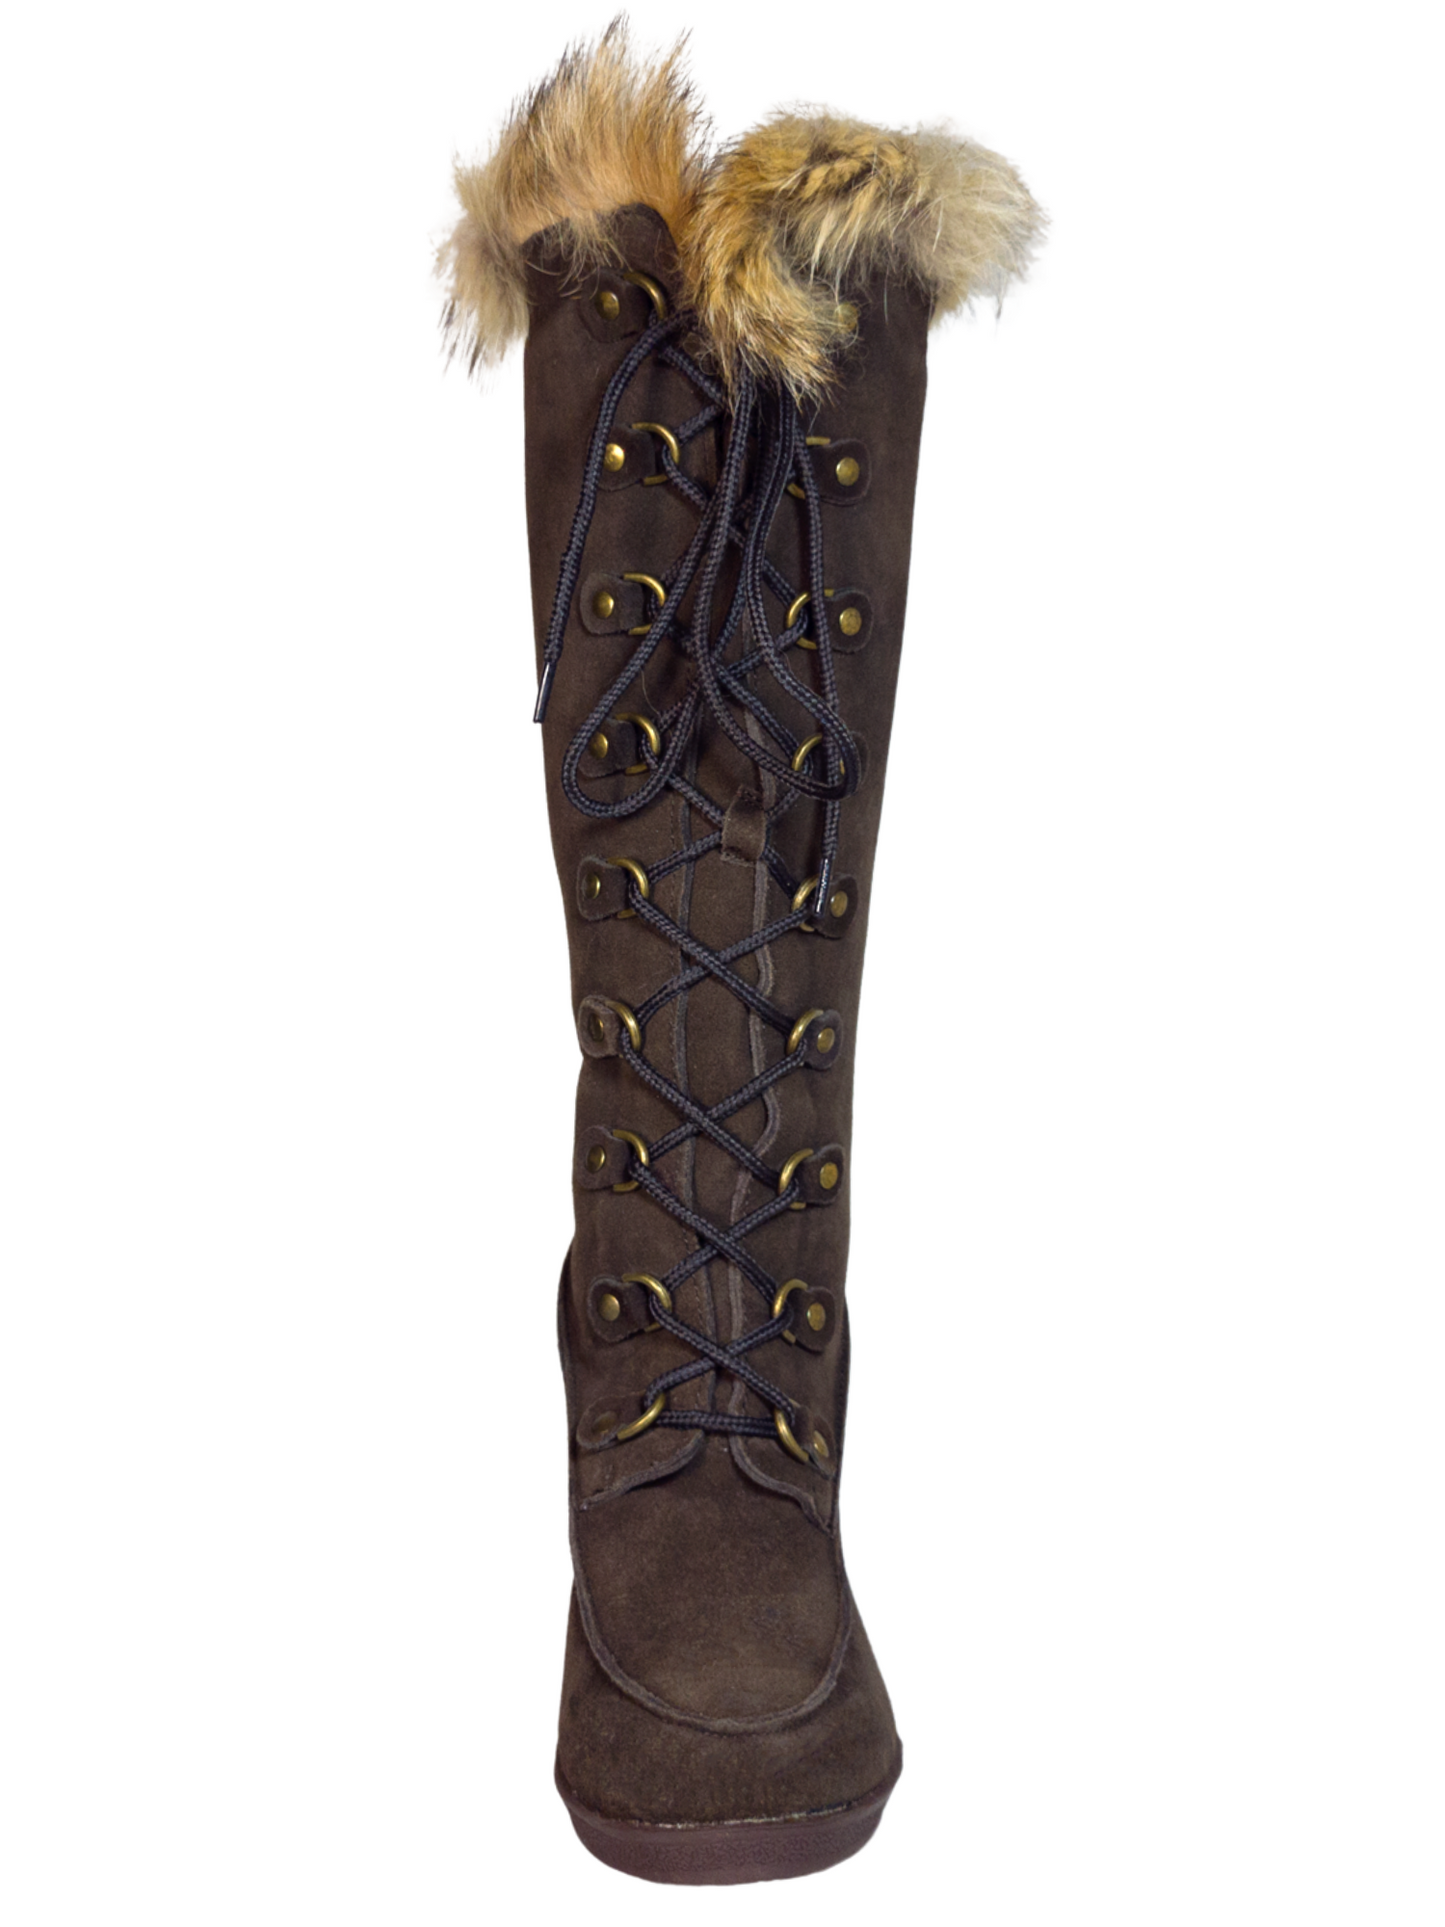 Botas de Invierno de Cuña de Piel Gamuza/Pelo de Zorro para Mujer 'Bearpaw' - ID: 7133 Winter Boots Bearpaw 